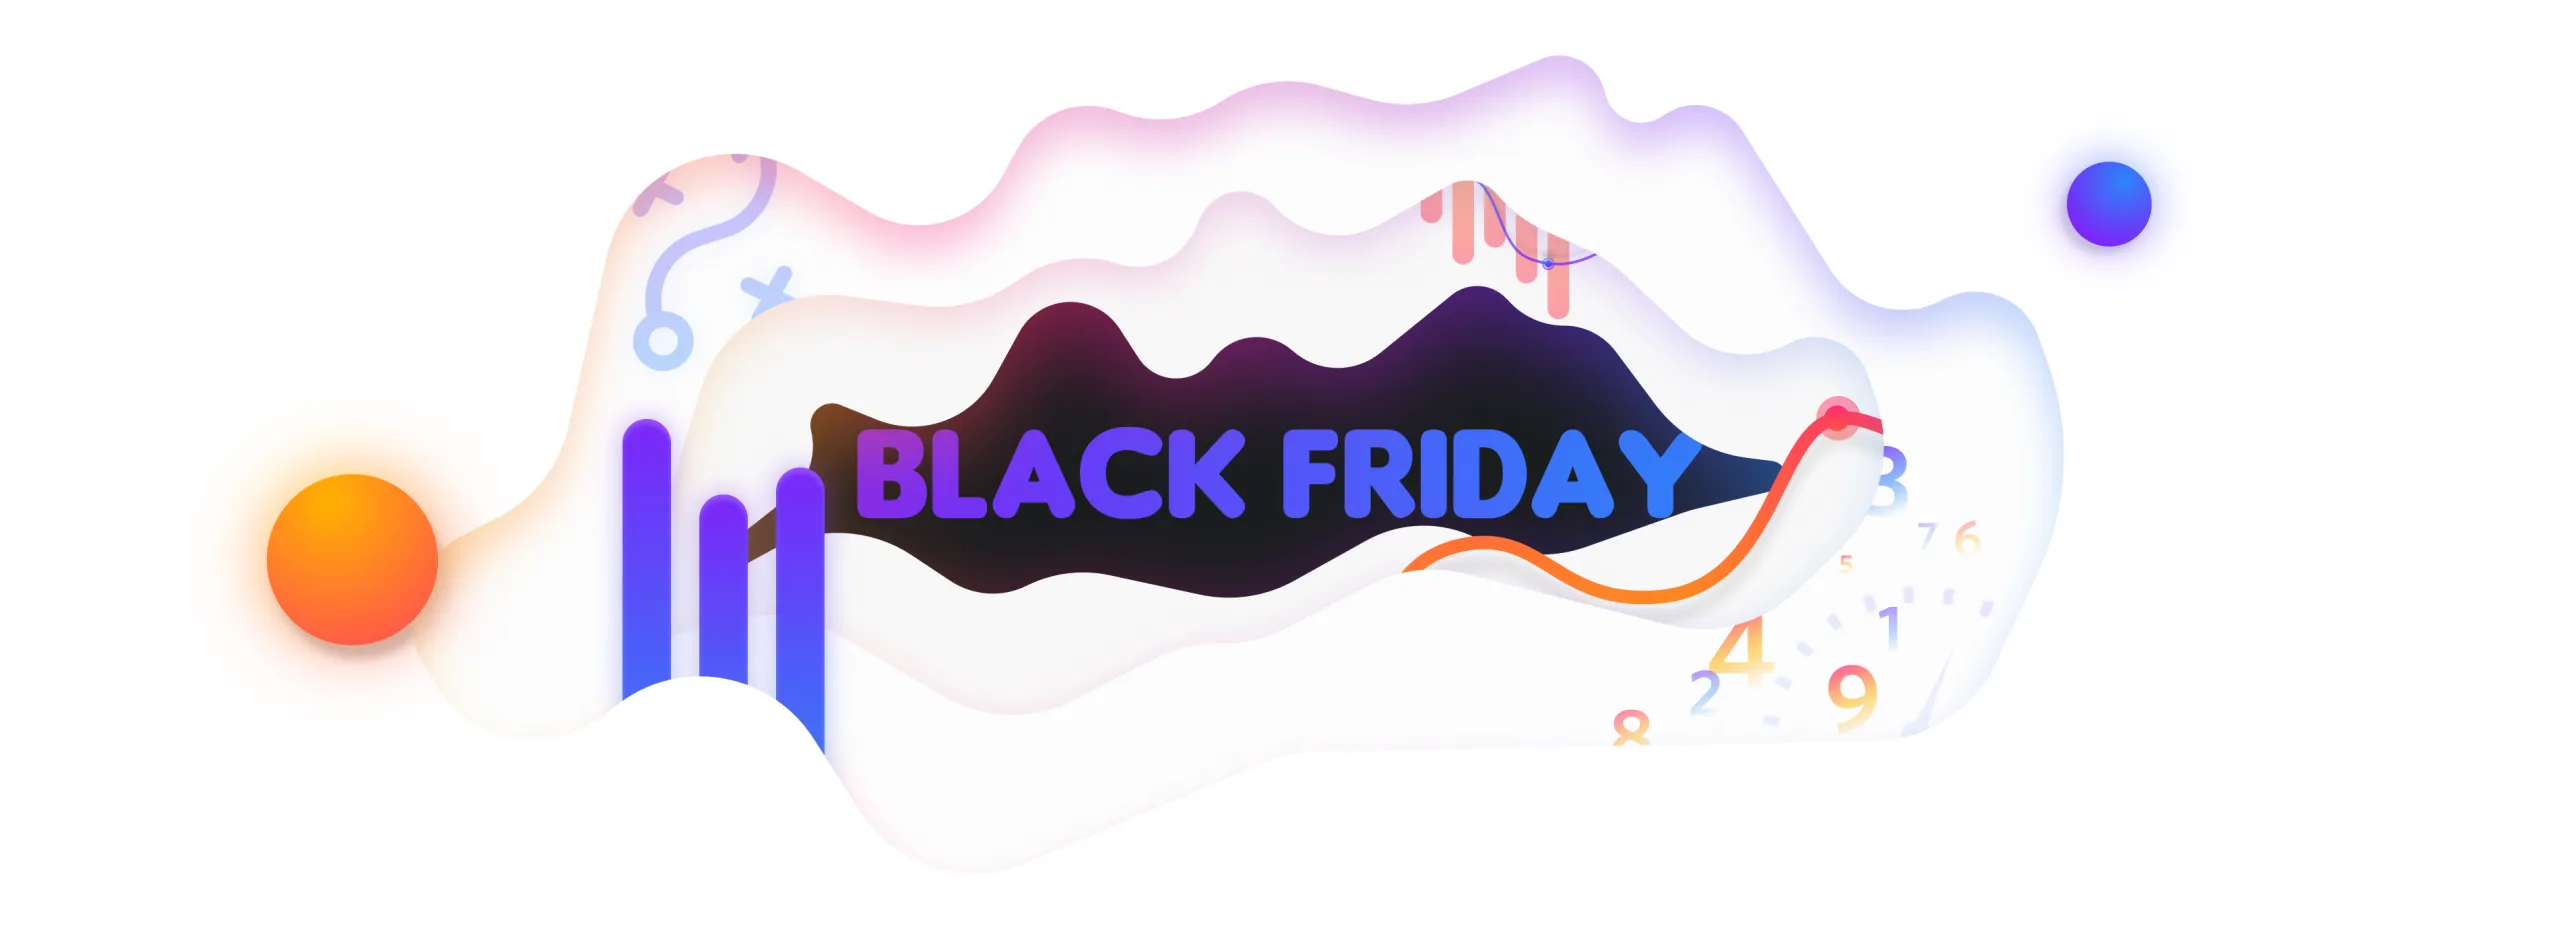 Estrategia Black Friday en Marketing y Ecommerce